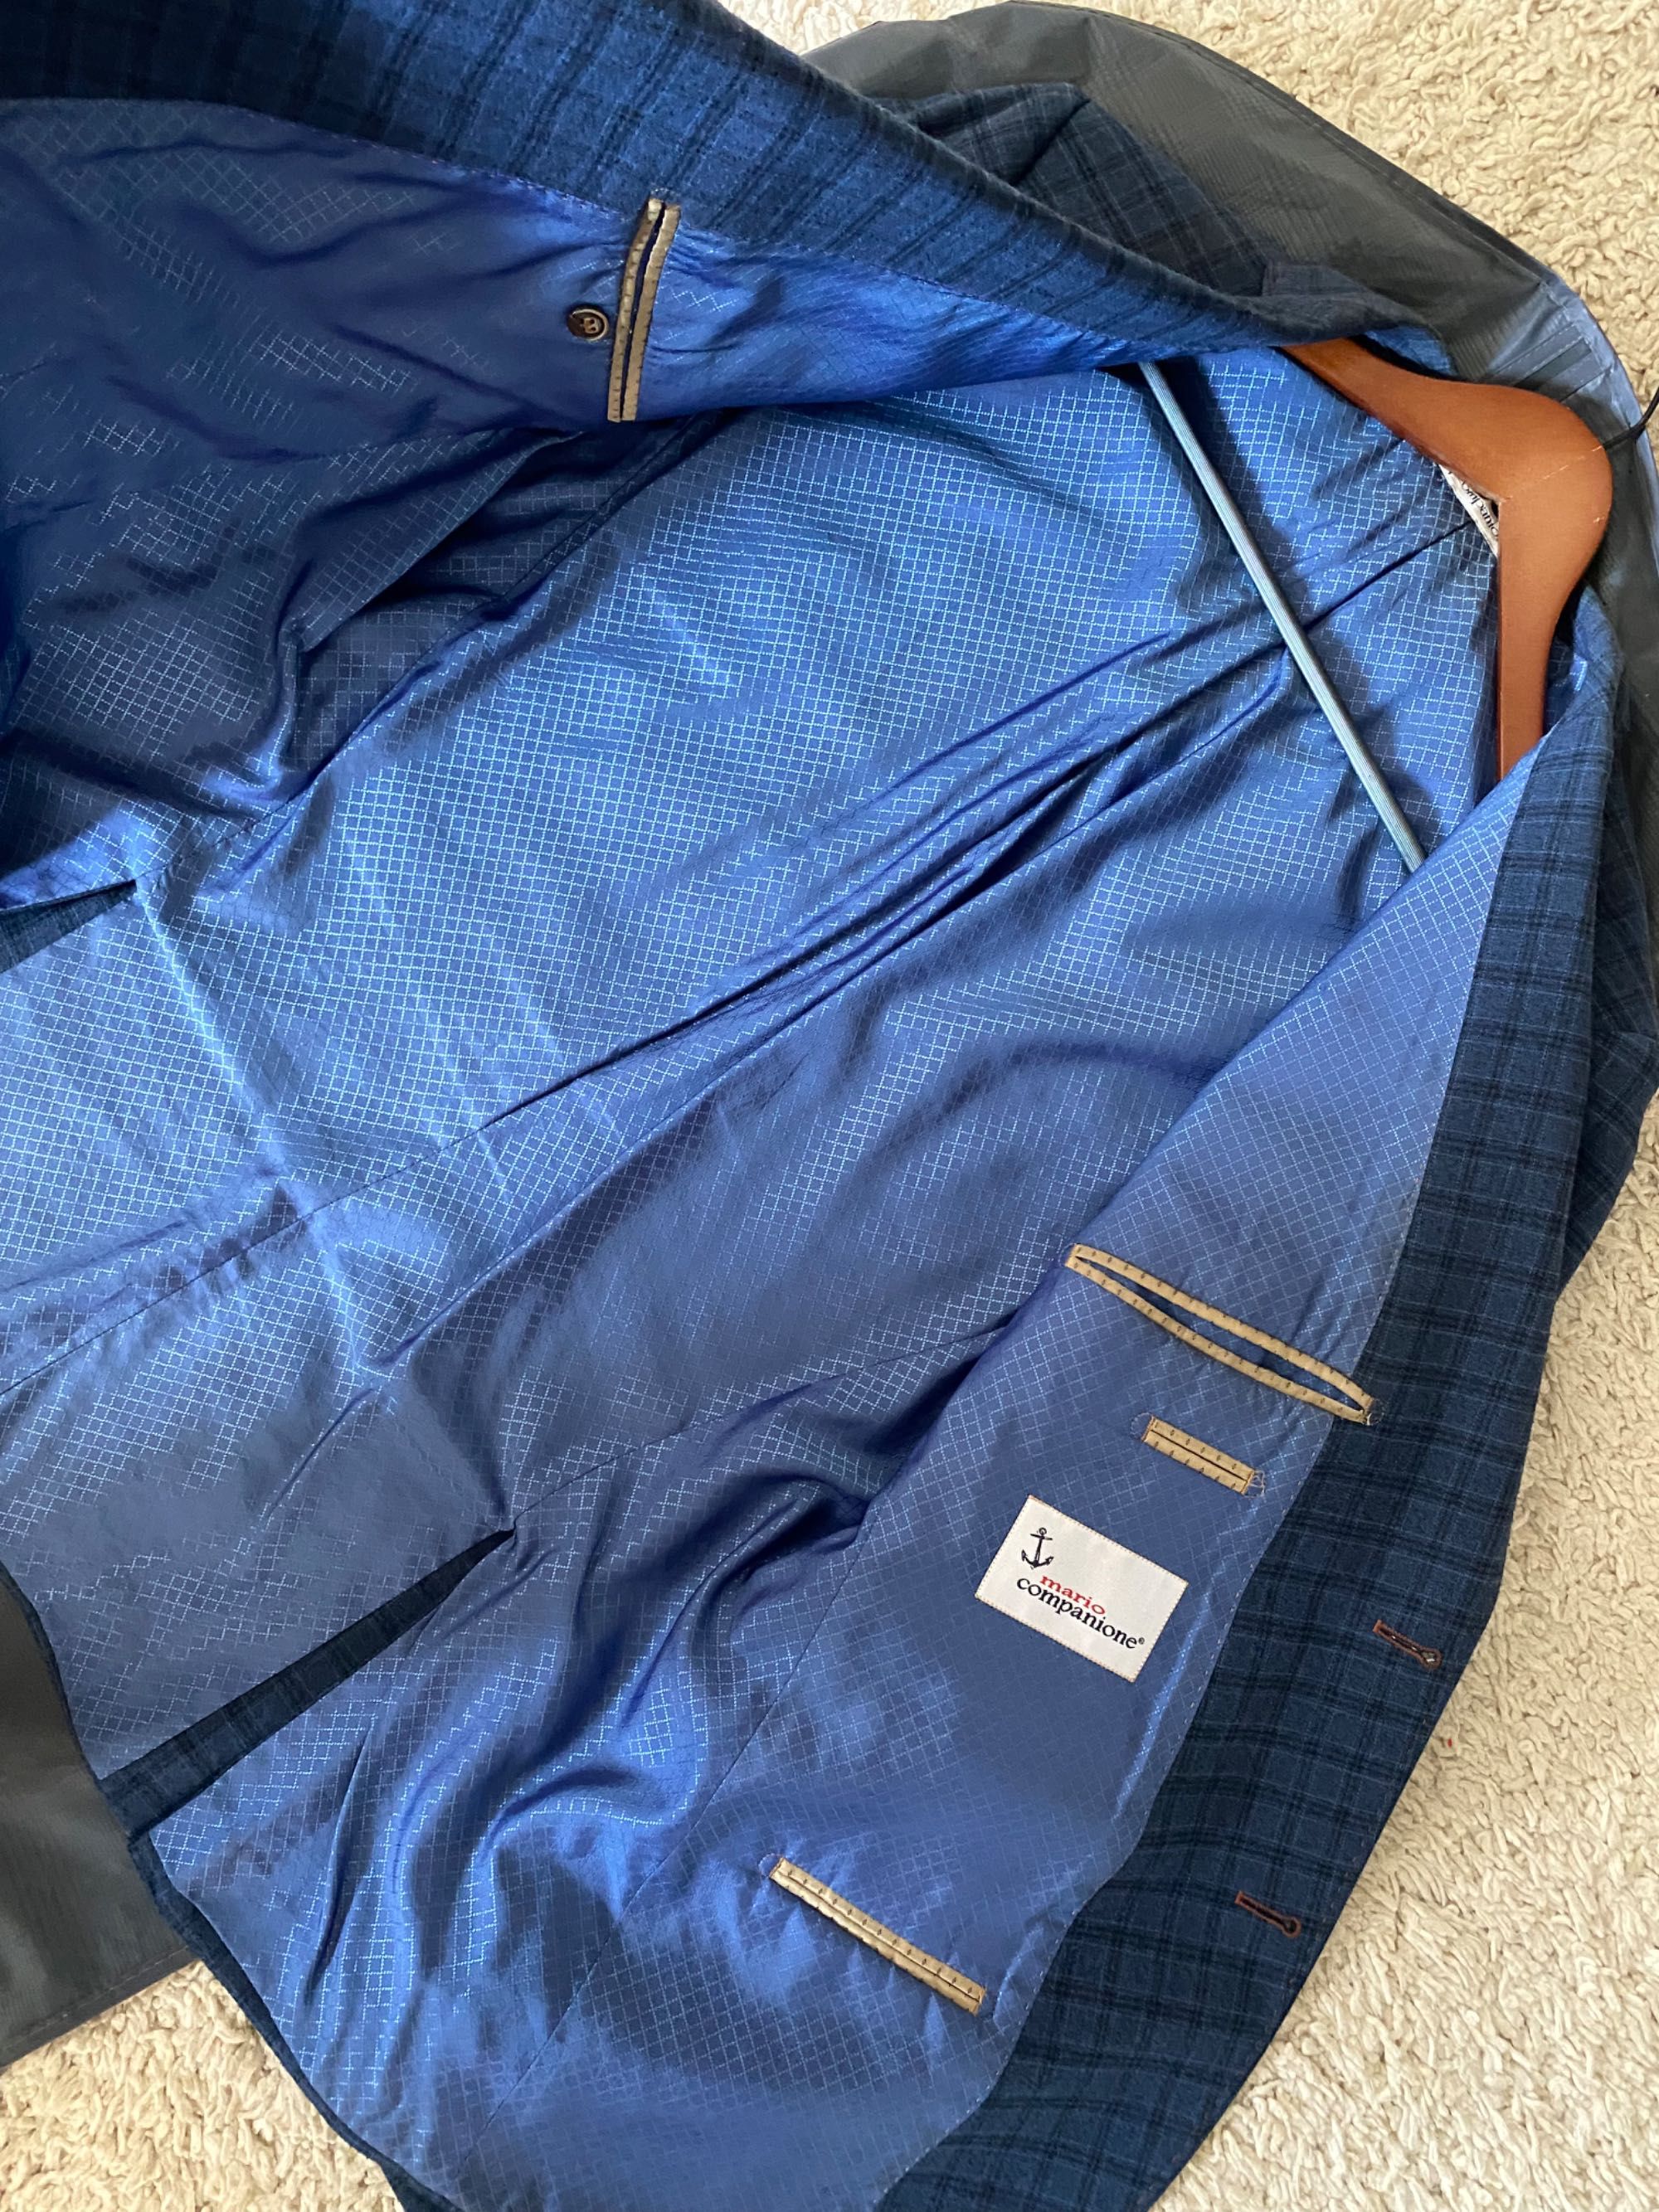 Мужской пиджак синий XL